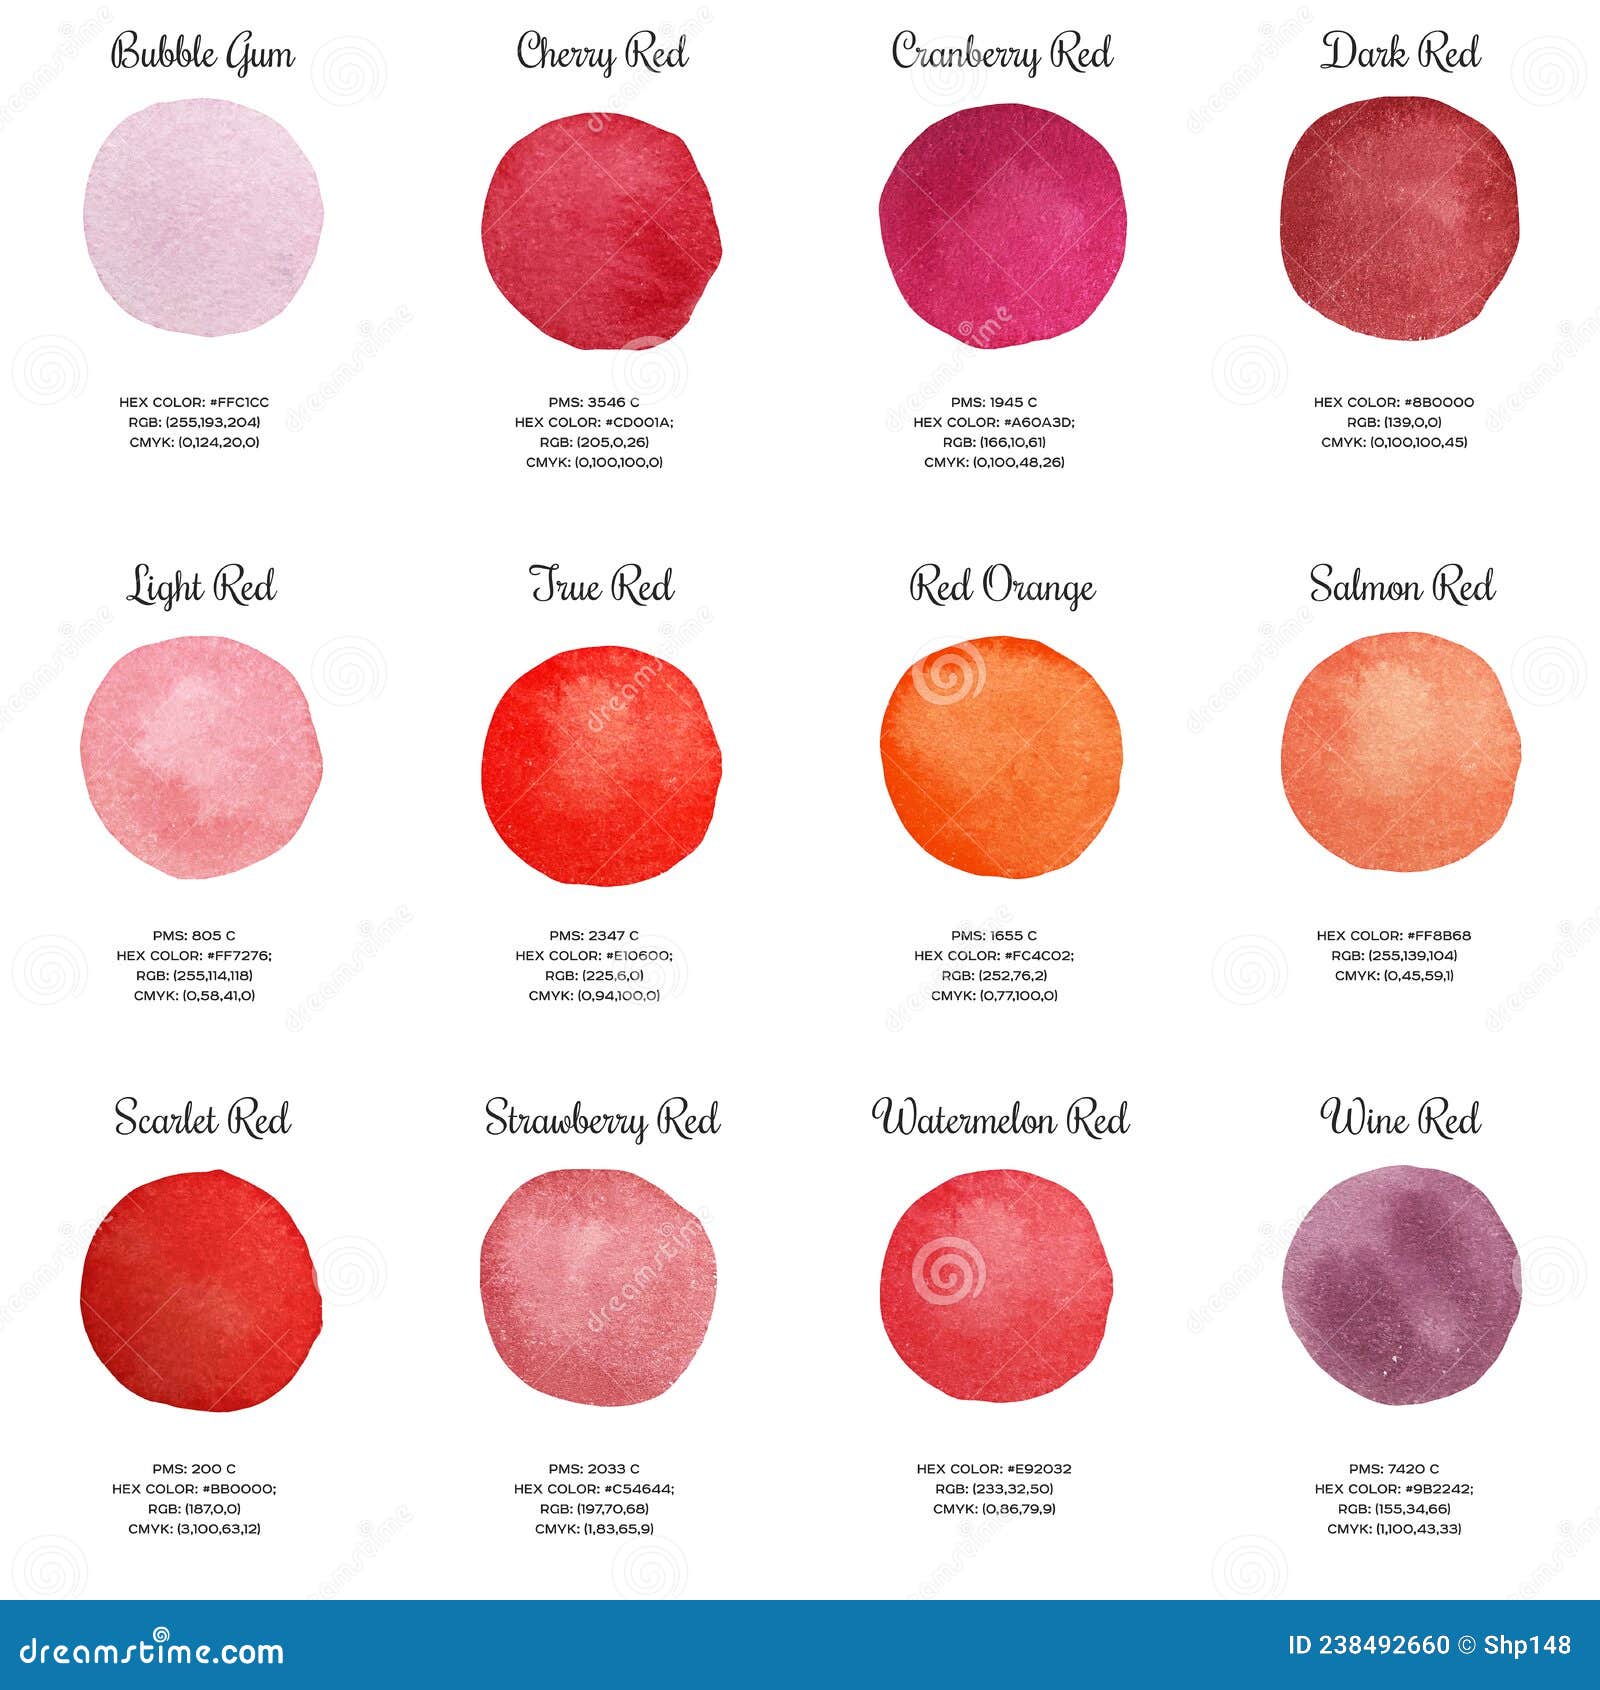 hastighed sej hjemmelevering Red Wine Color Chart Stock Illustrations – 41 Red Wine Color Chart Stock  Illustrations, Vectors & Clipart - Dreamstime